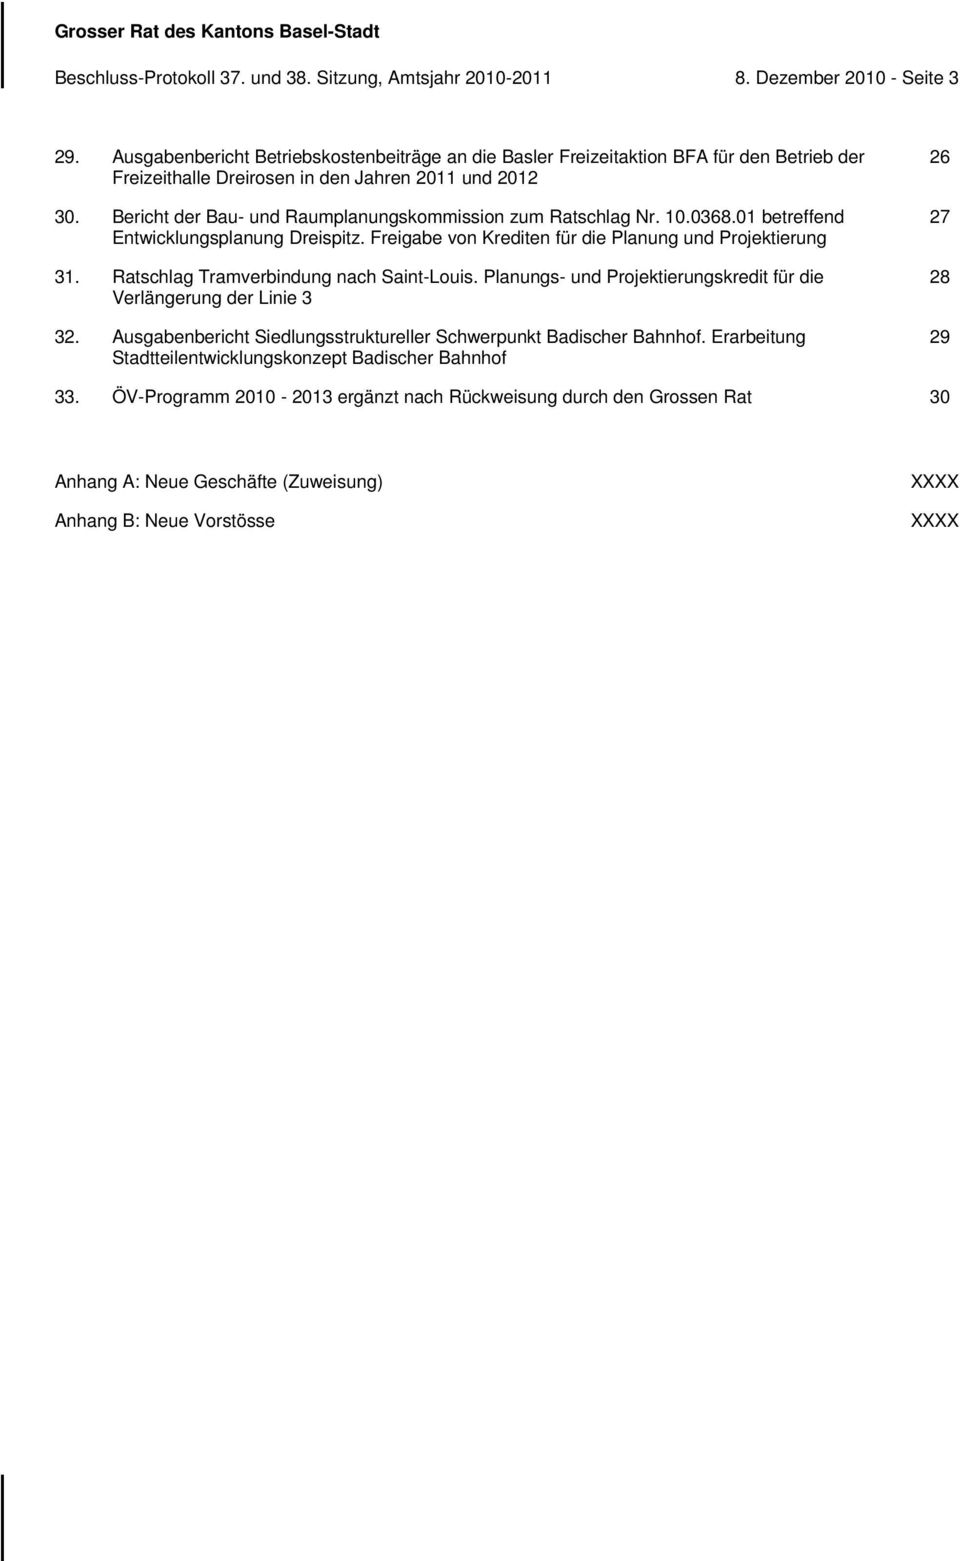 Bericht der Bau- und Raumplanungskommission zum Ratschlag Nr. 10.0368.01 betreffend Entwicklungsplanung Dreispitz. Freigabe von Krediten für die Planung und Projektierung 31.